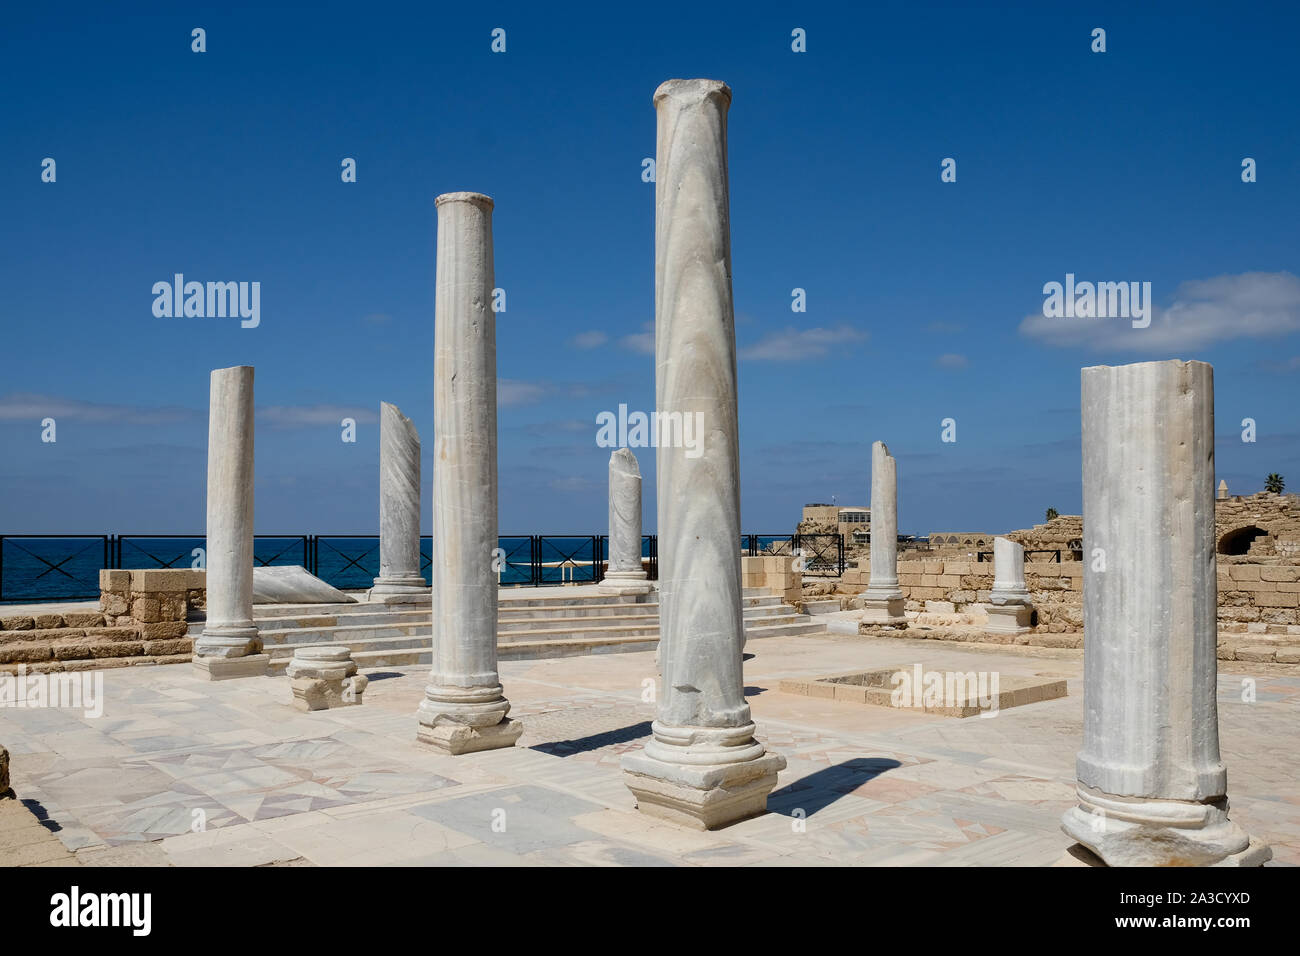 Les colonnes en pierre ancienne contre un ciel bleu clair Banque D'Images